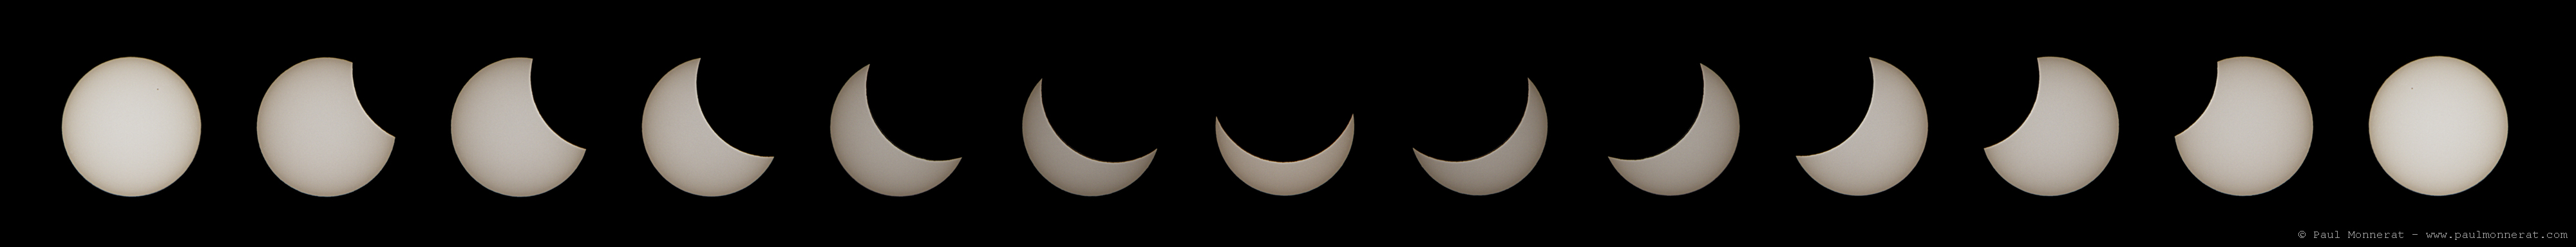 eclipse solaire 2015 03 20 web